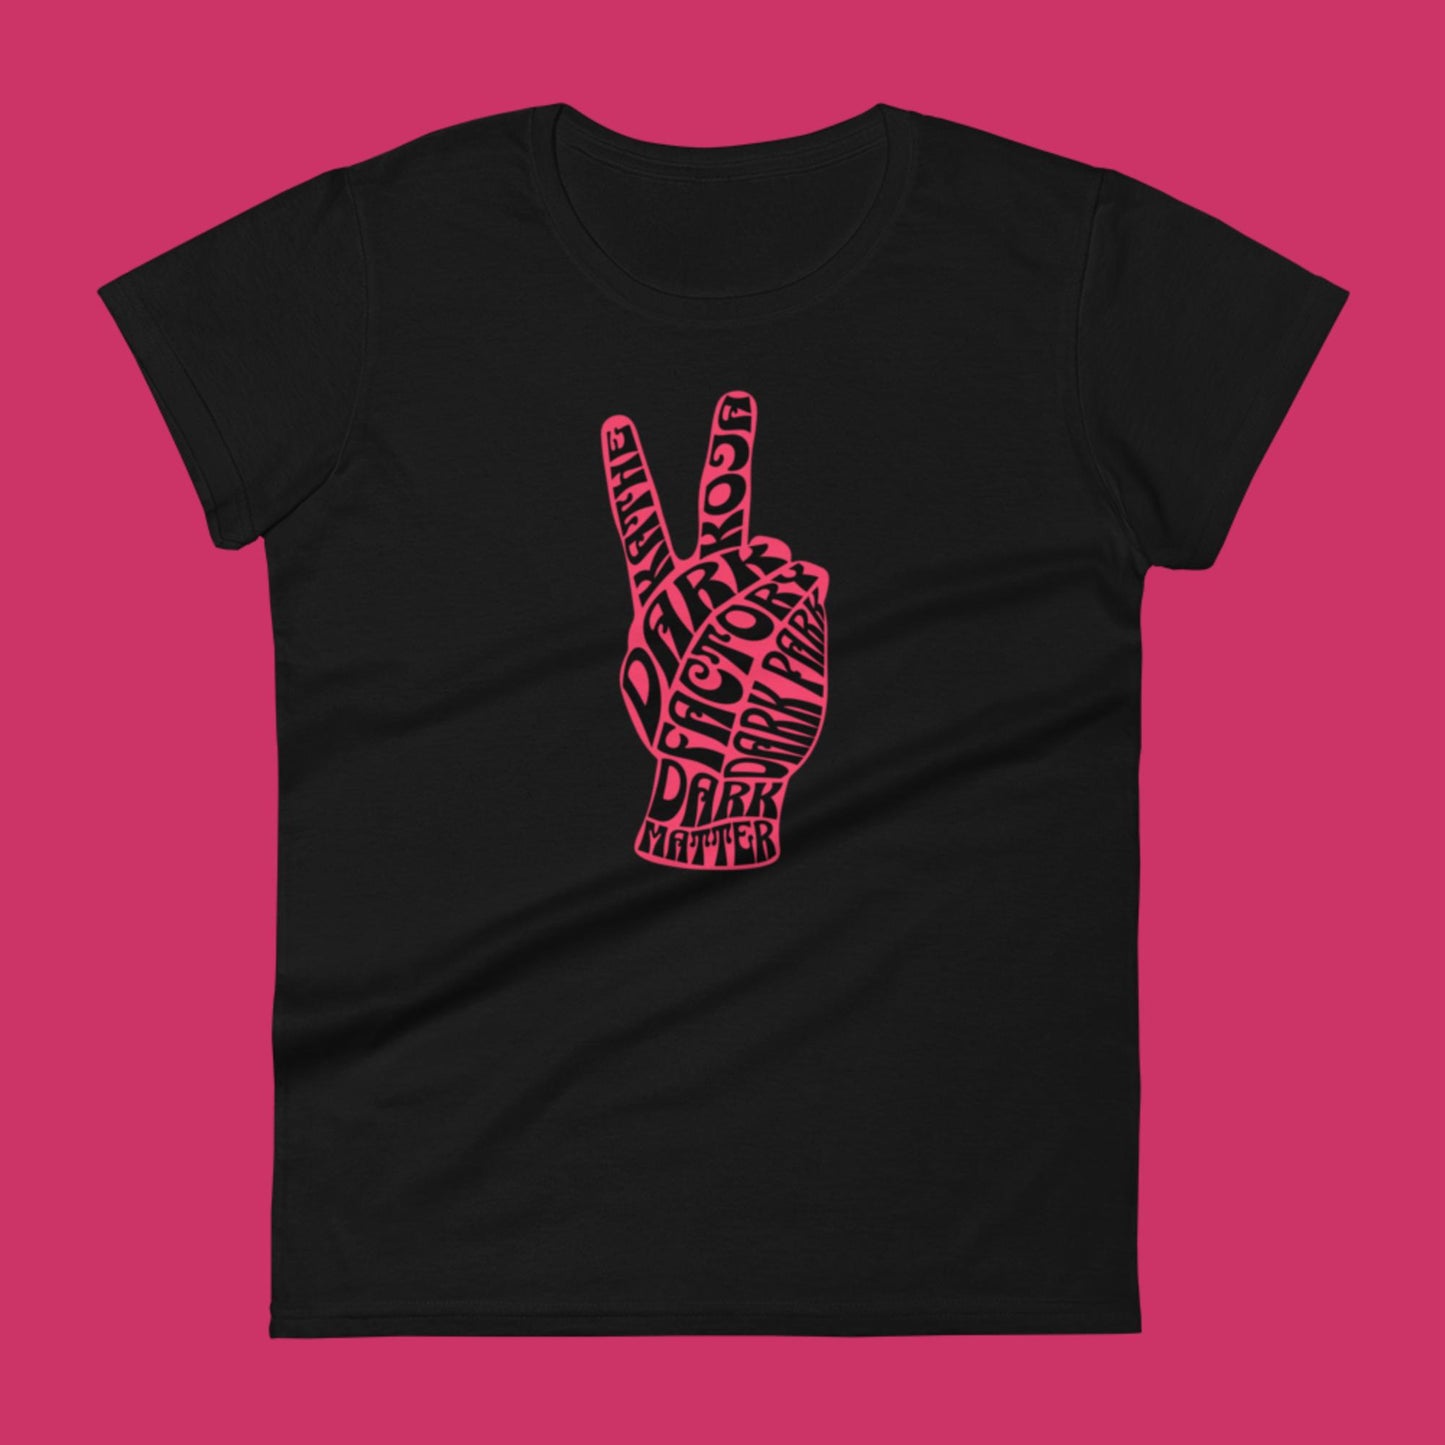 Dark Factory "V" is for Vibe Women's t-shirt